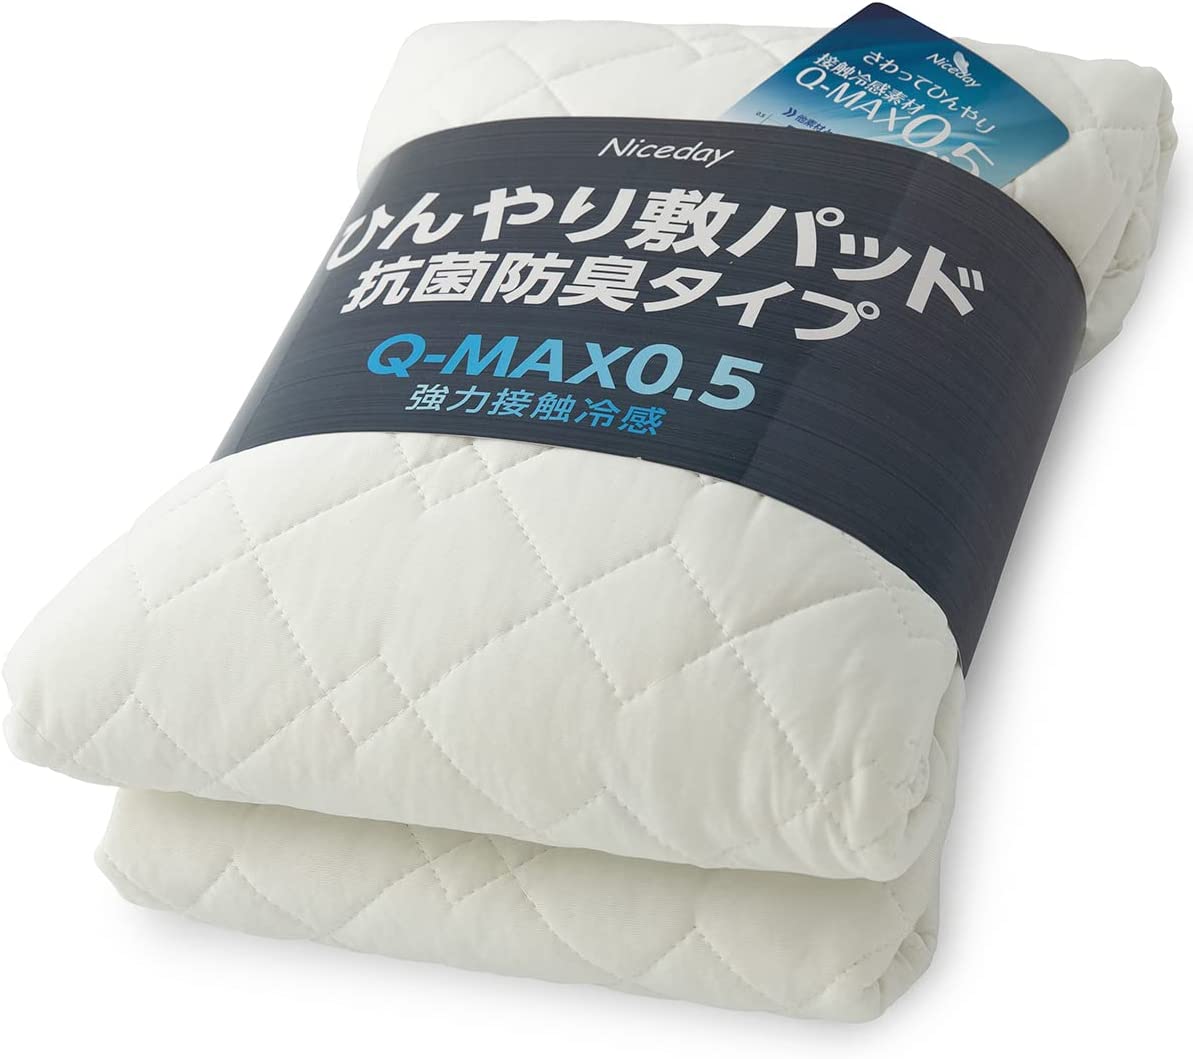 【日本代購】Niceday 涼爽 床墊 觸感清涼 Q-max0.542 可洗 褥墊 抗菌 防臭 雙面可用 米白